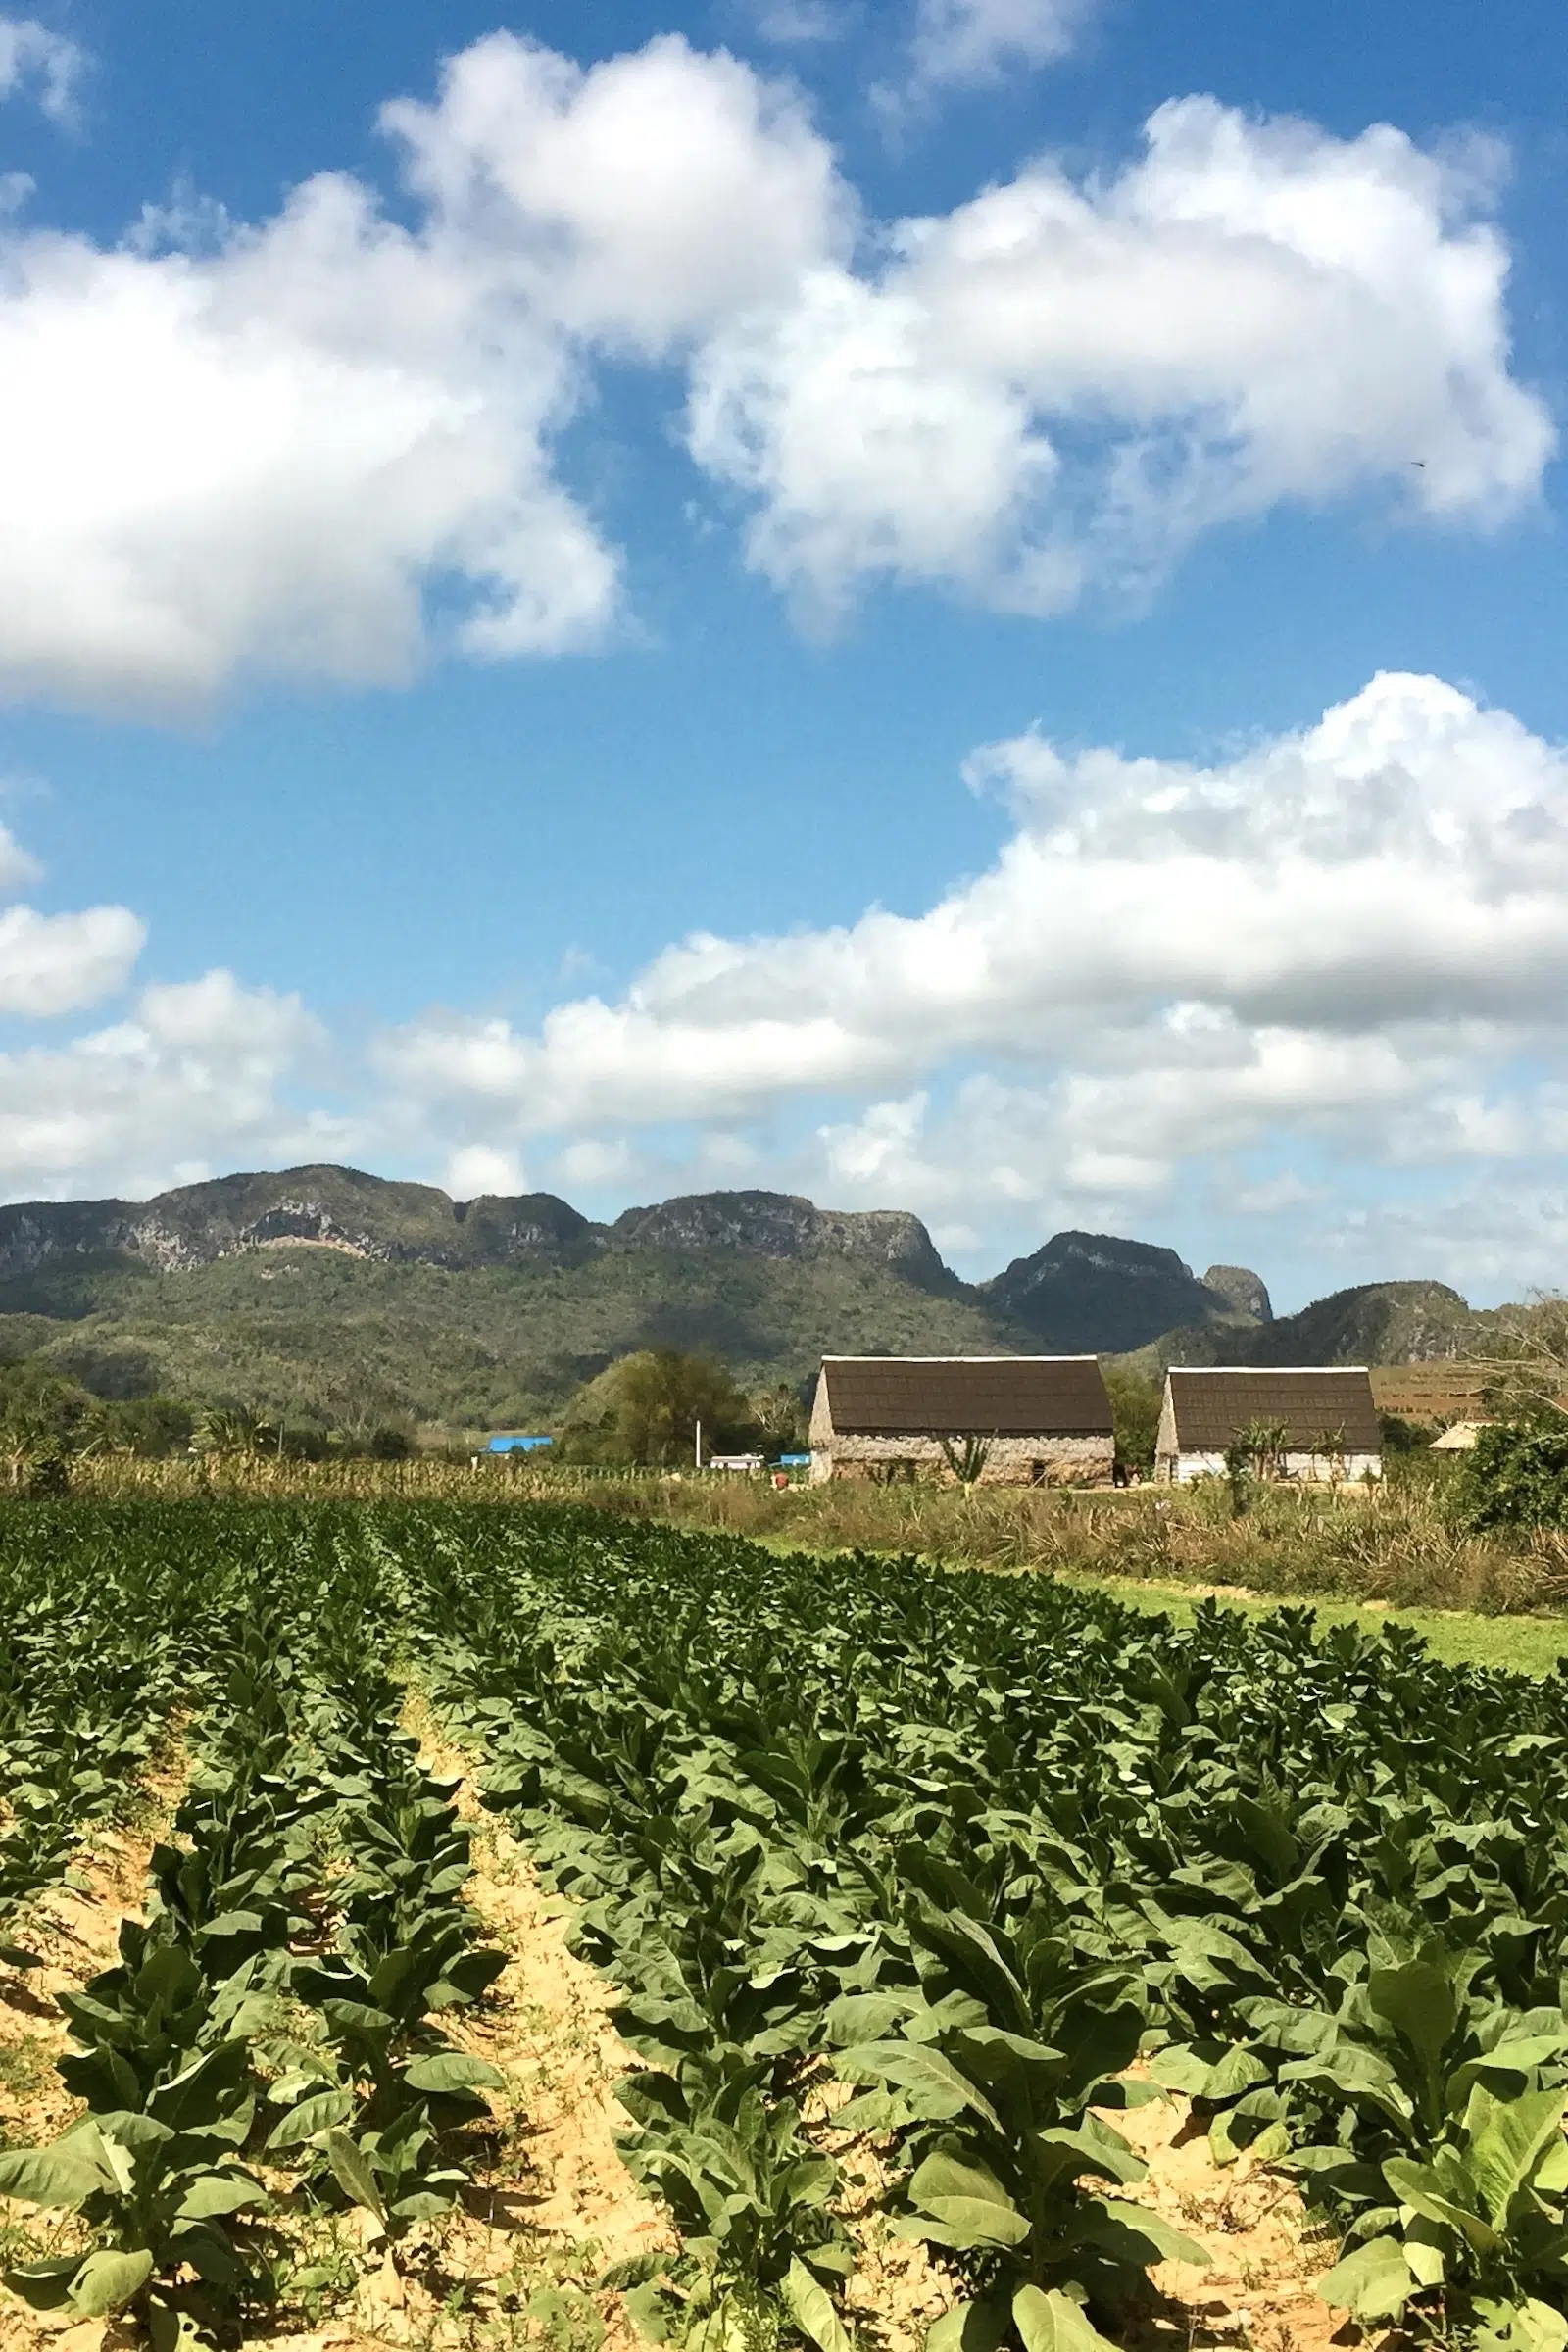 Tobacco Farm in Vinales, Cuba